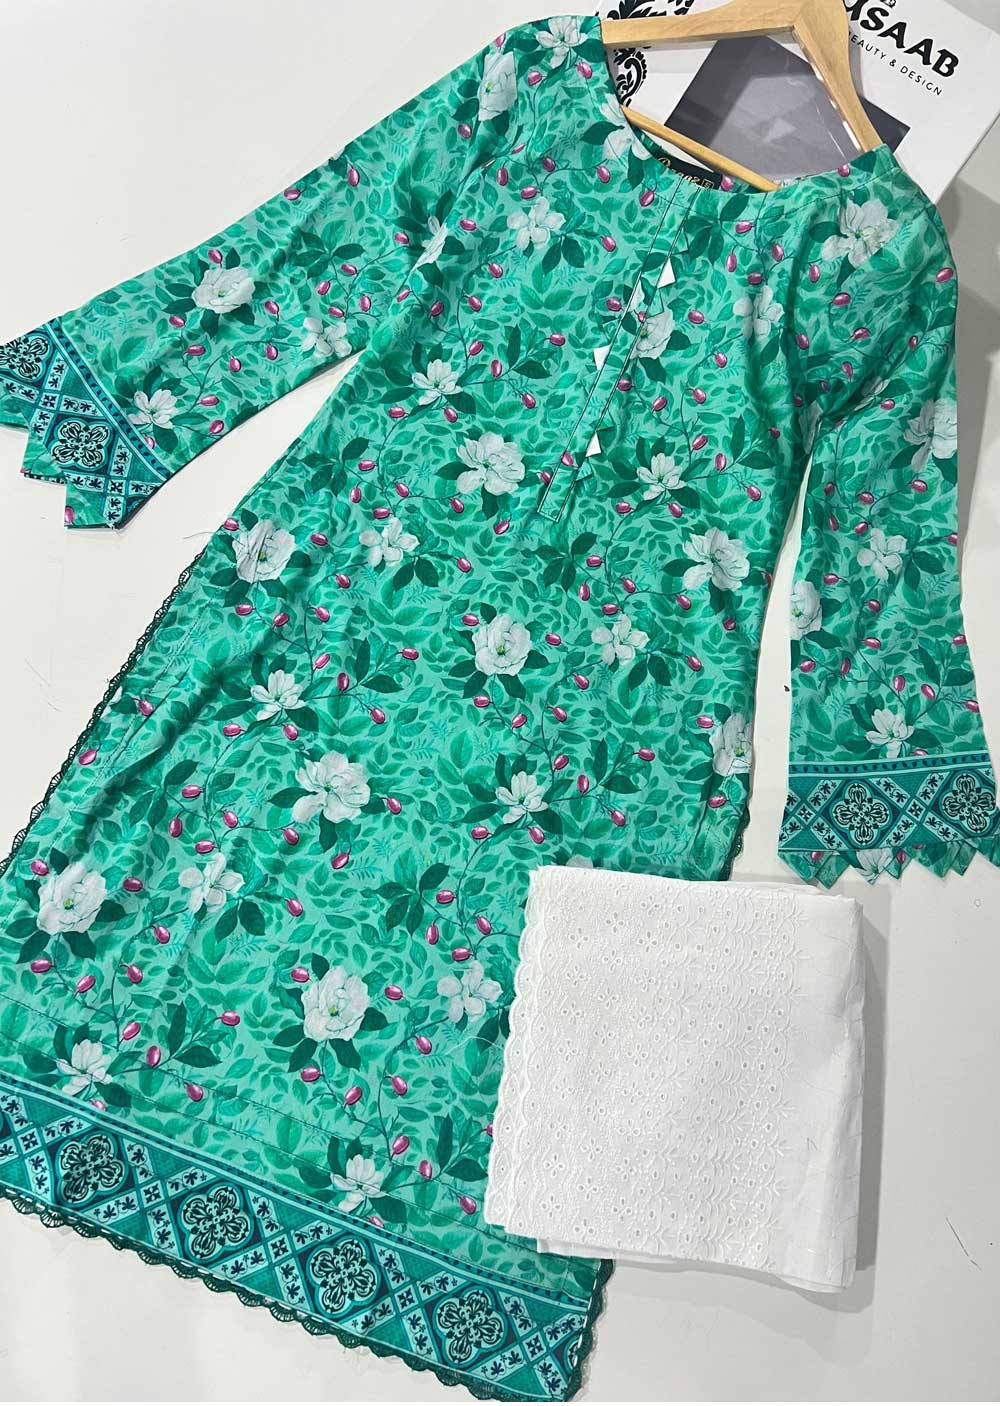 RGZ1310 Readymade Floral Printed Lawn Suit - Memsaab Online